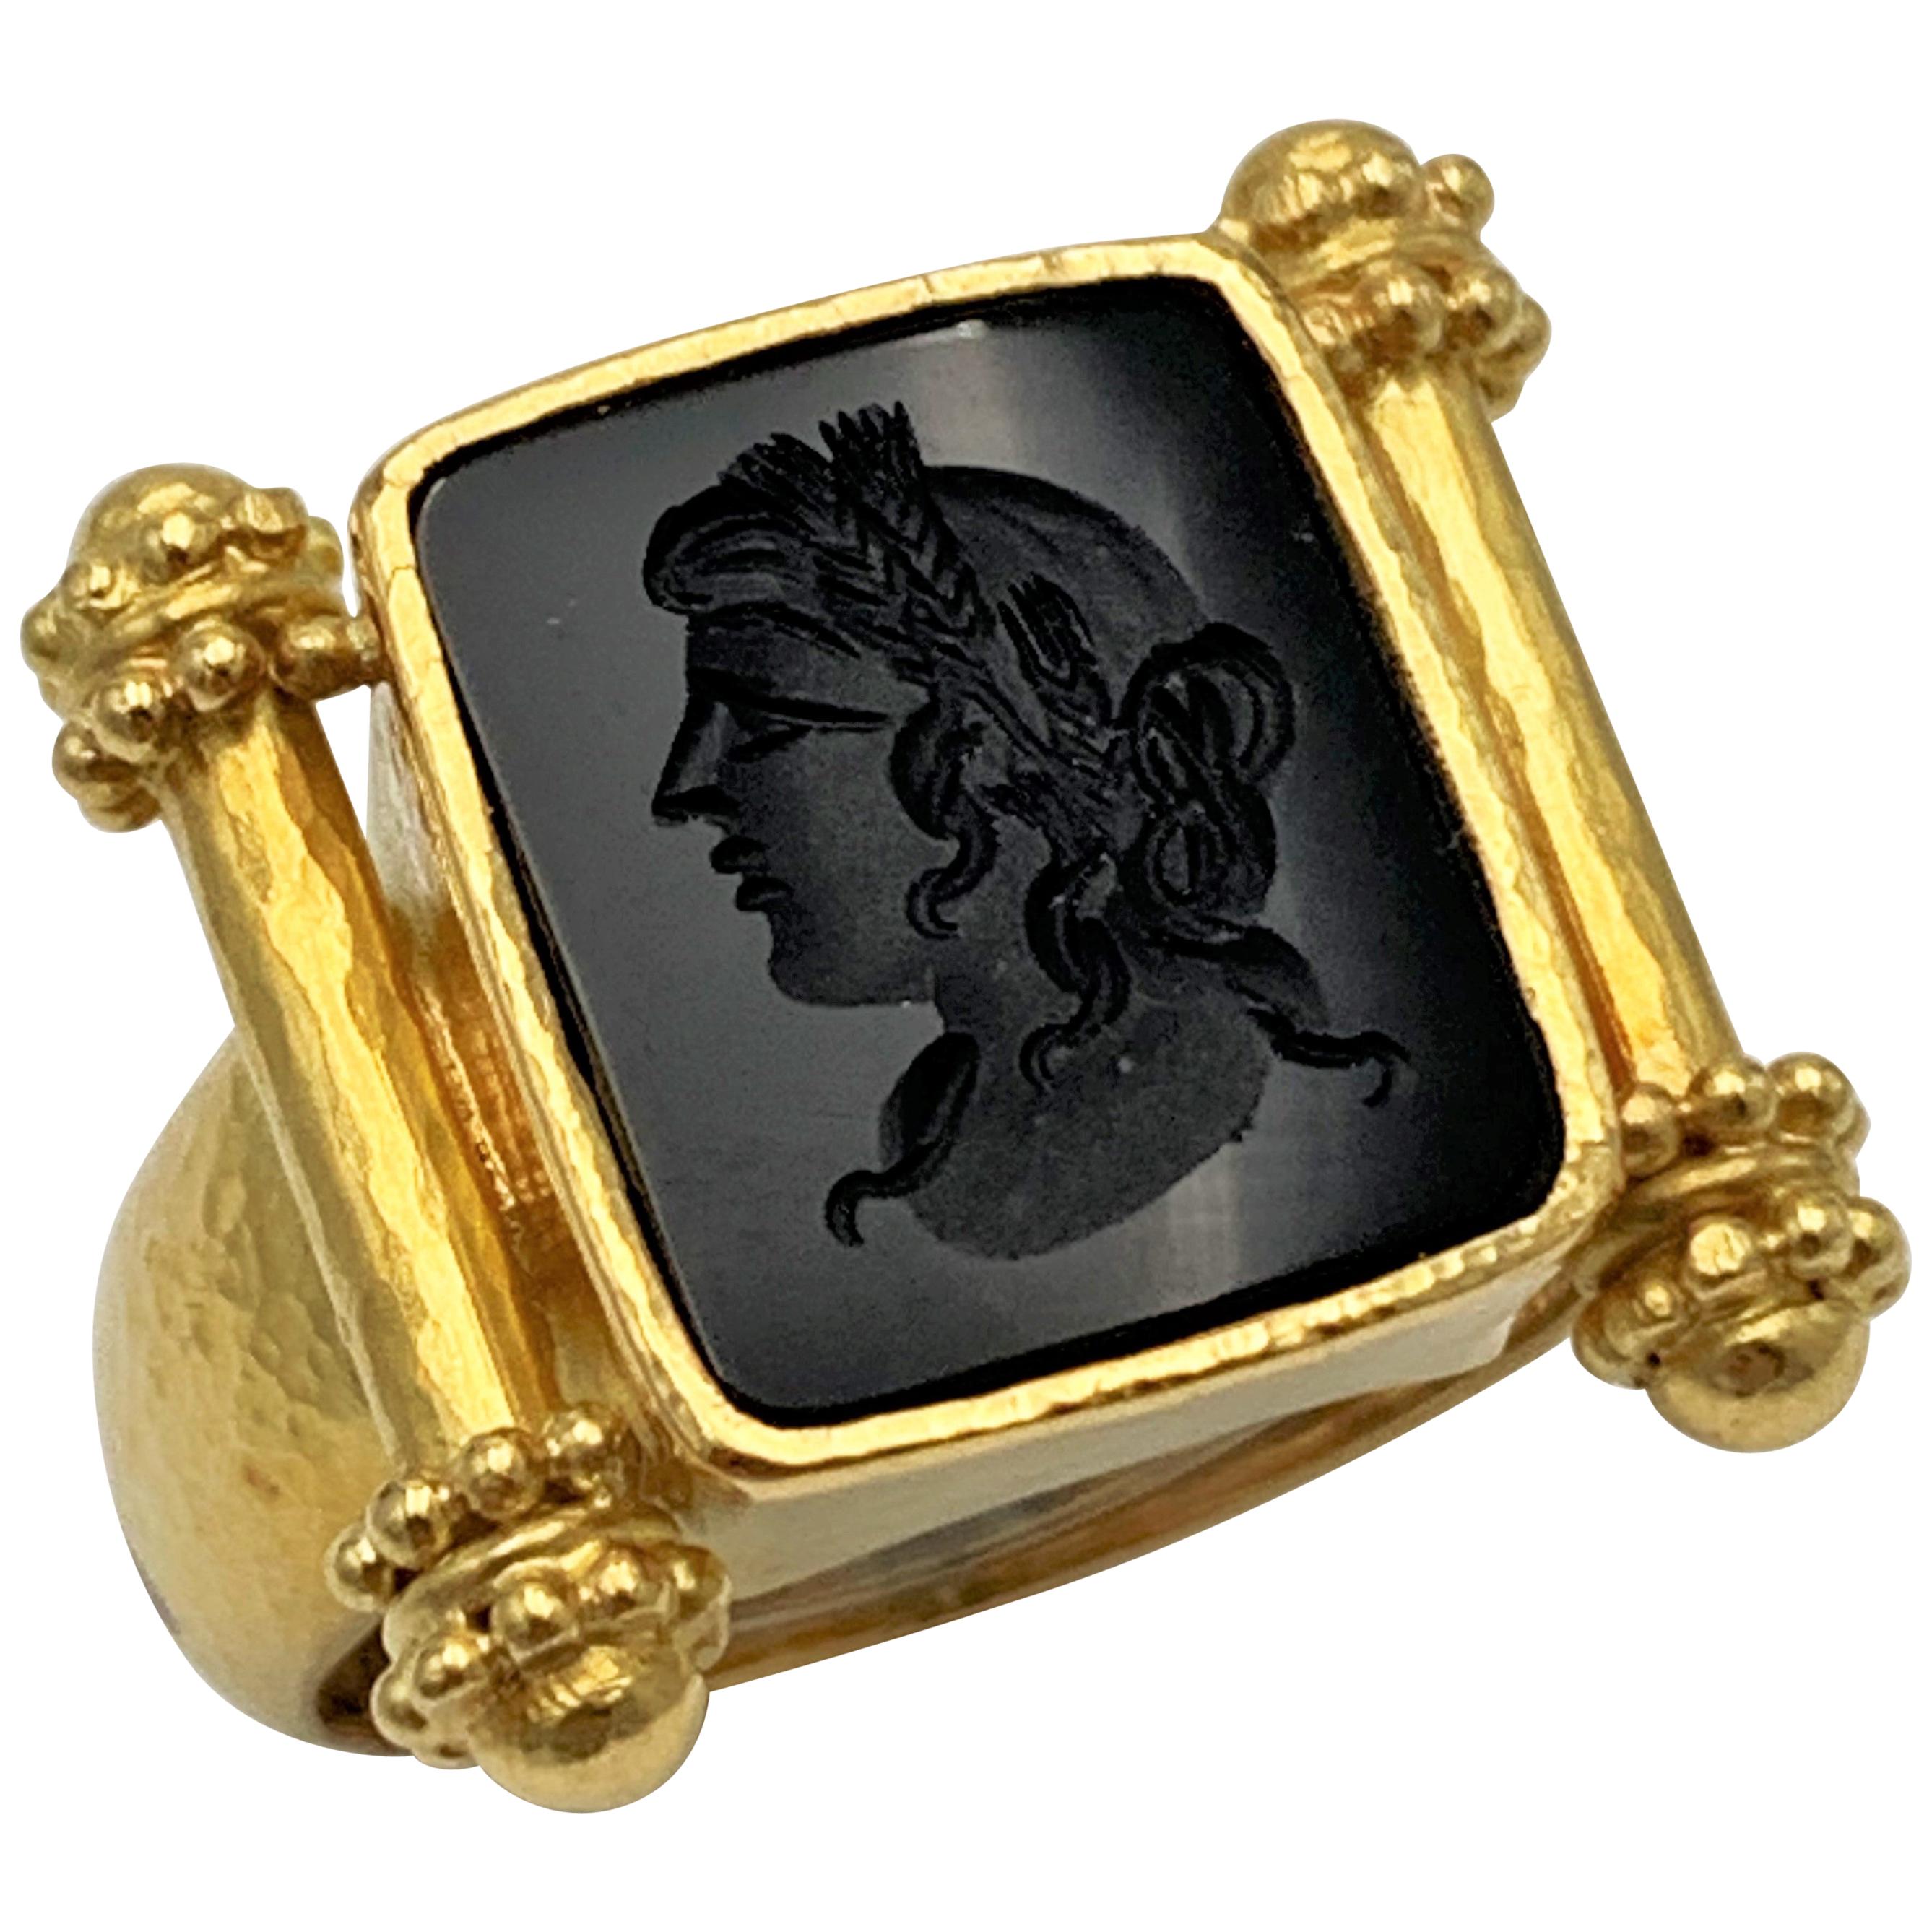 Elizabeth Locke Gold and Carved Onyx Intaglio Ring